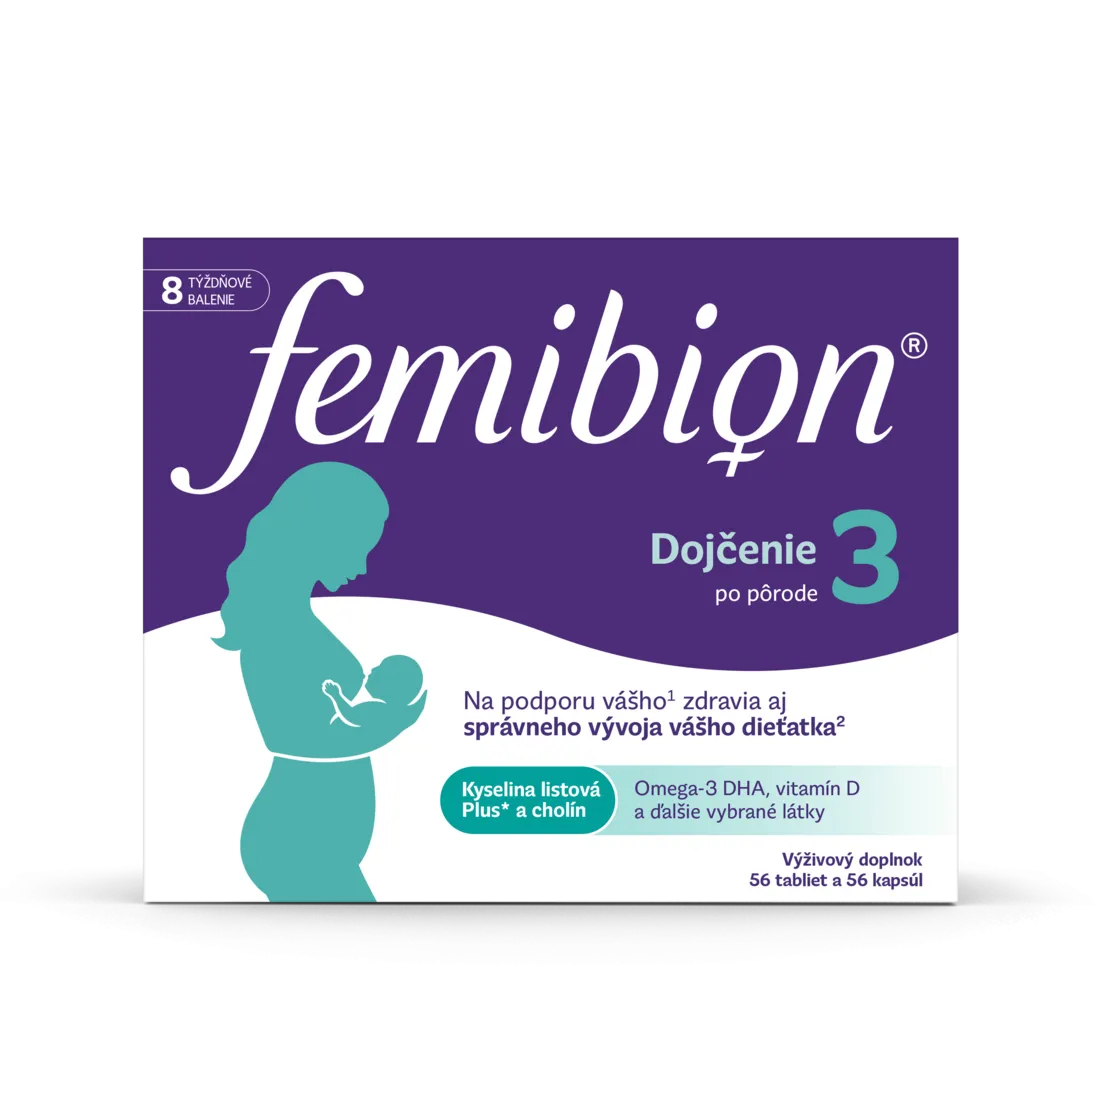 Femibion® 3 Dojčenie, 56 tbl + 56 cps 1×56 tbl + 56 cps, výživový doplnok